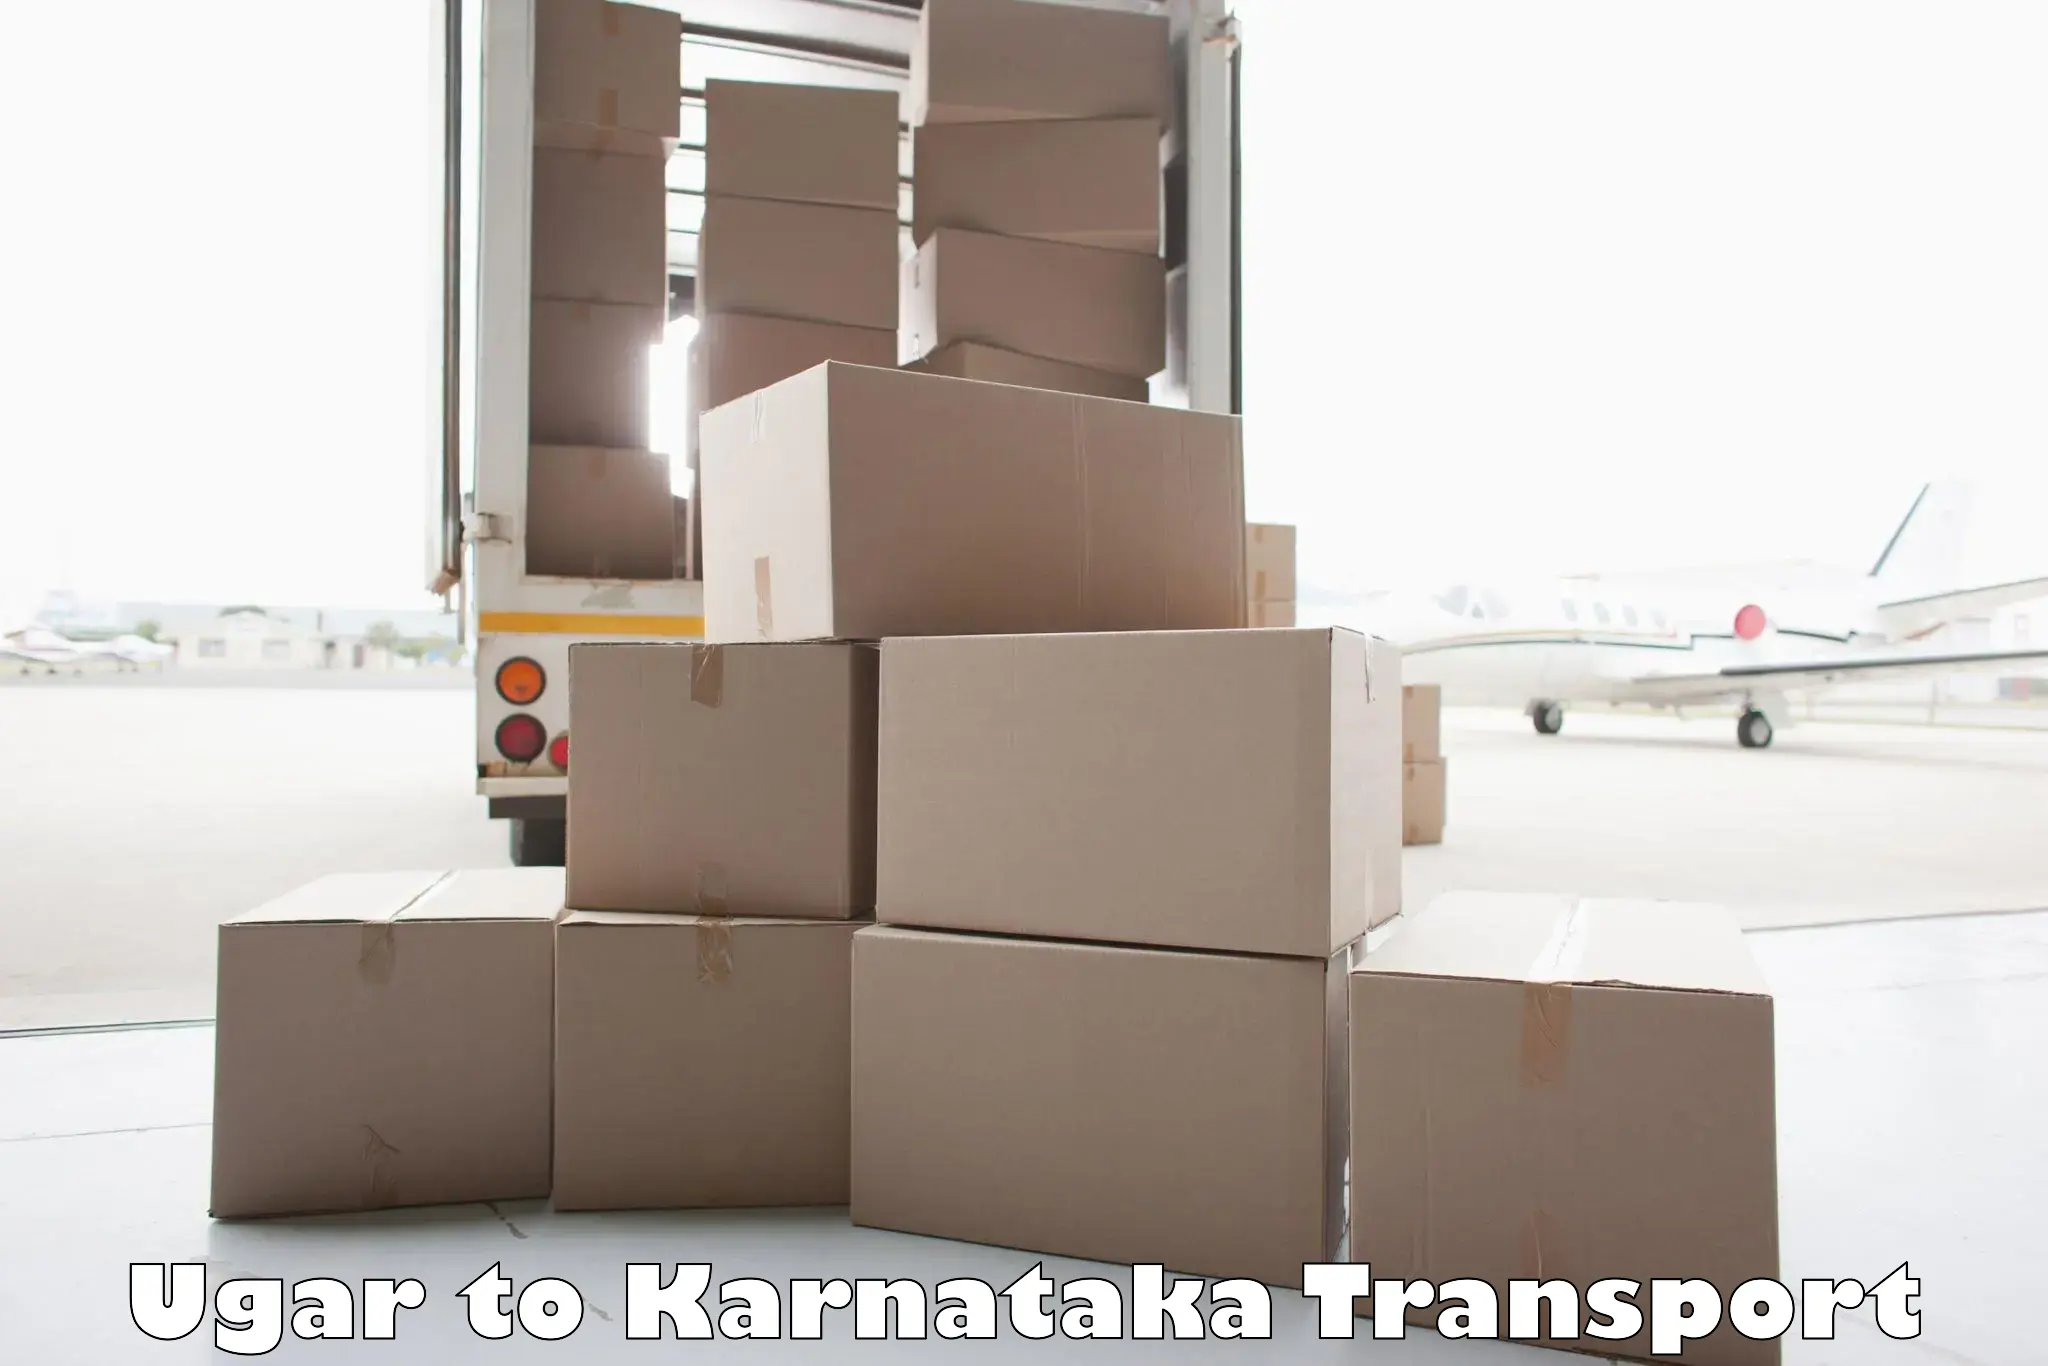 Luggage transport services Ugar to Mangalore University Mangalagangotri